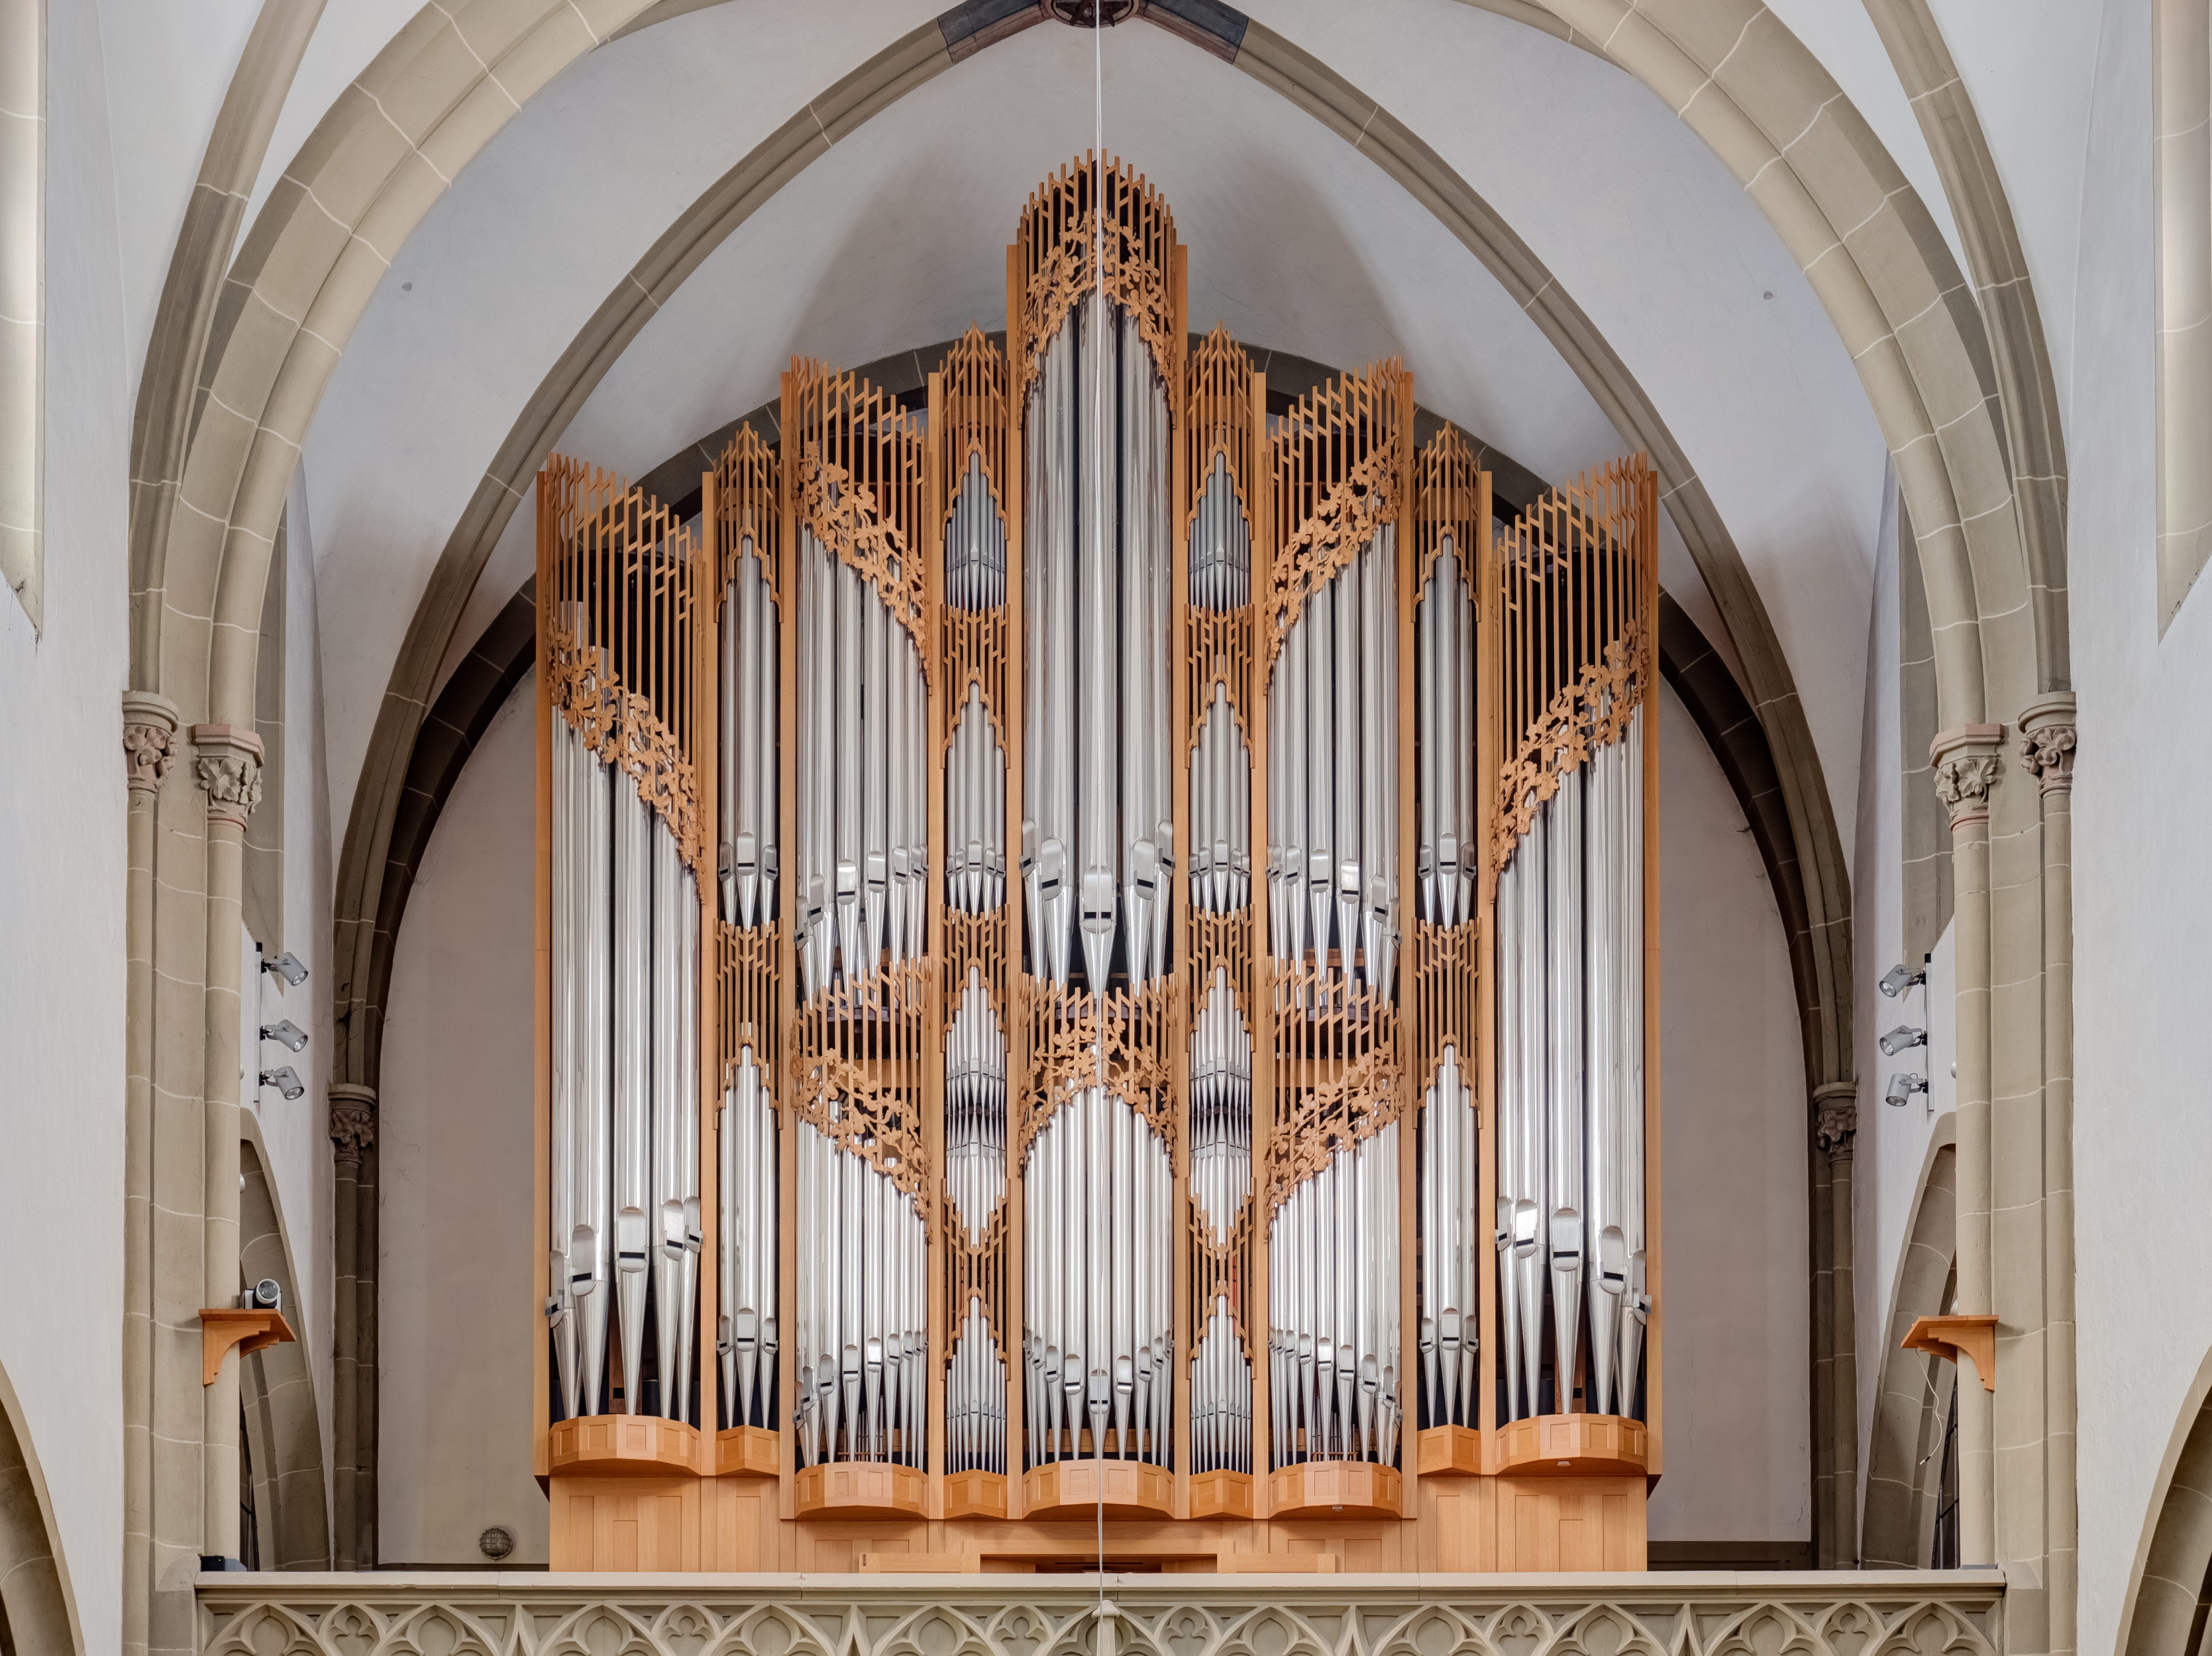 Kissingen Orgel Stadtpfarrkirche 0417RM0323 -HDR